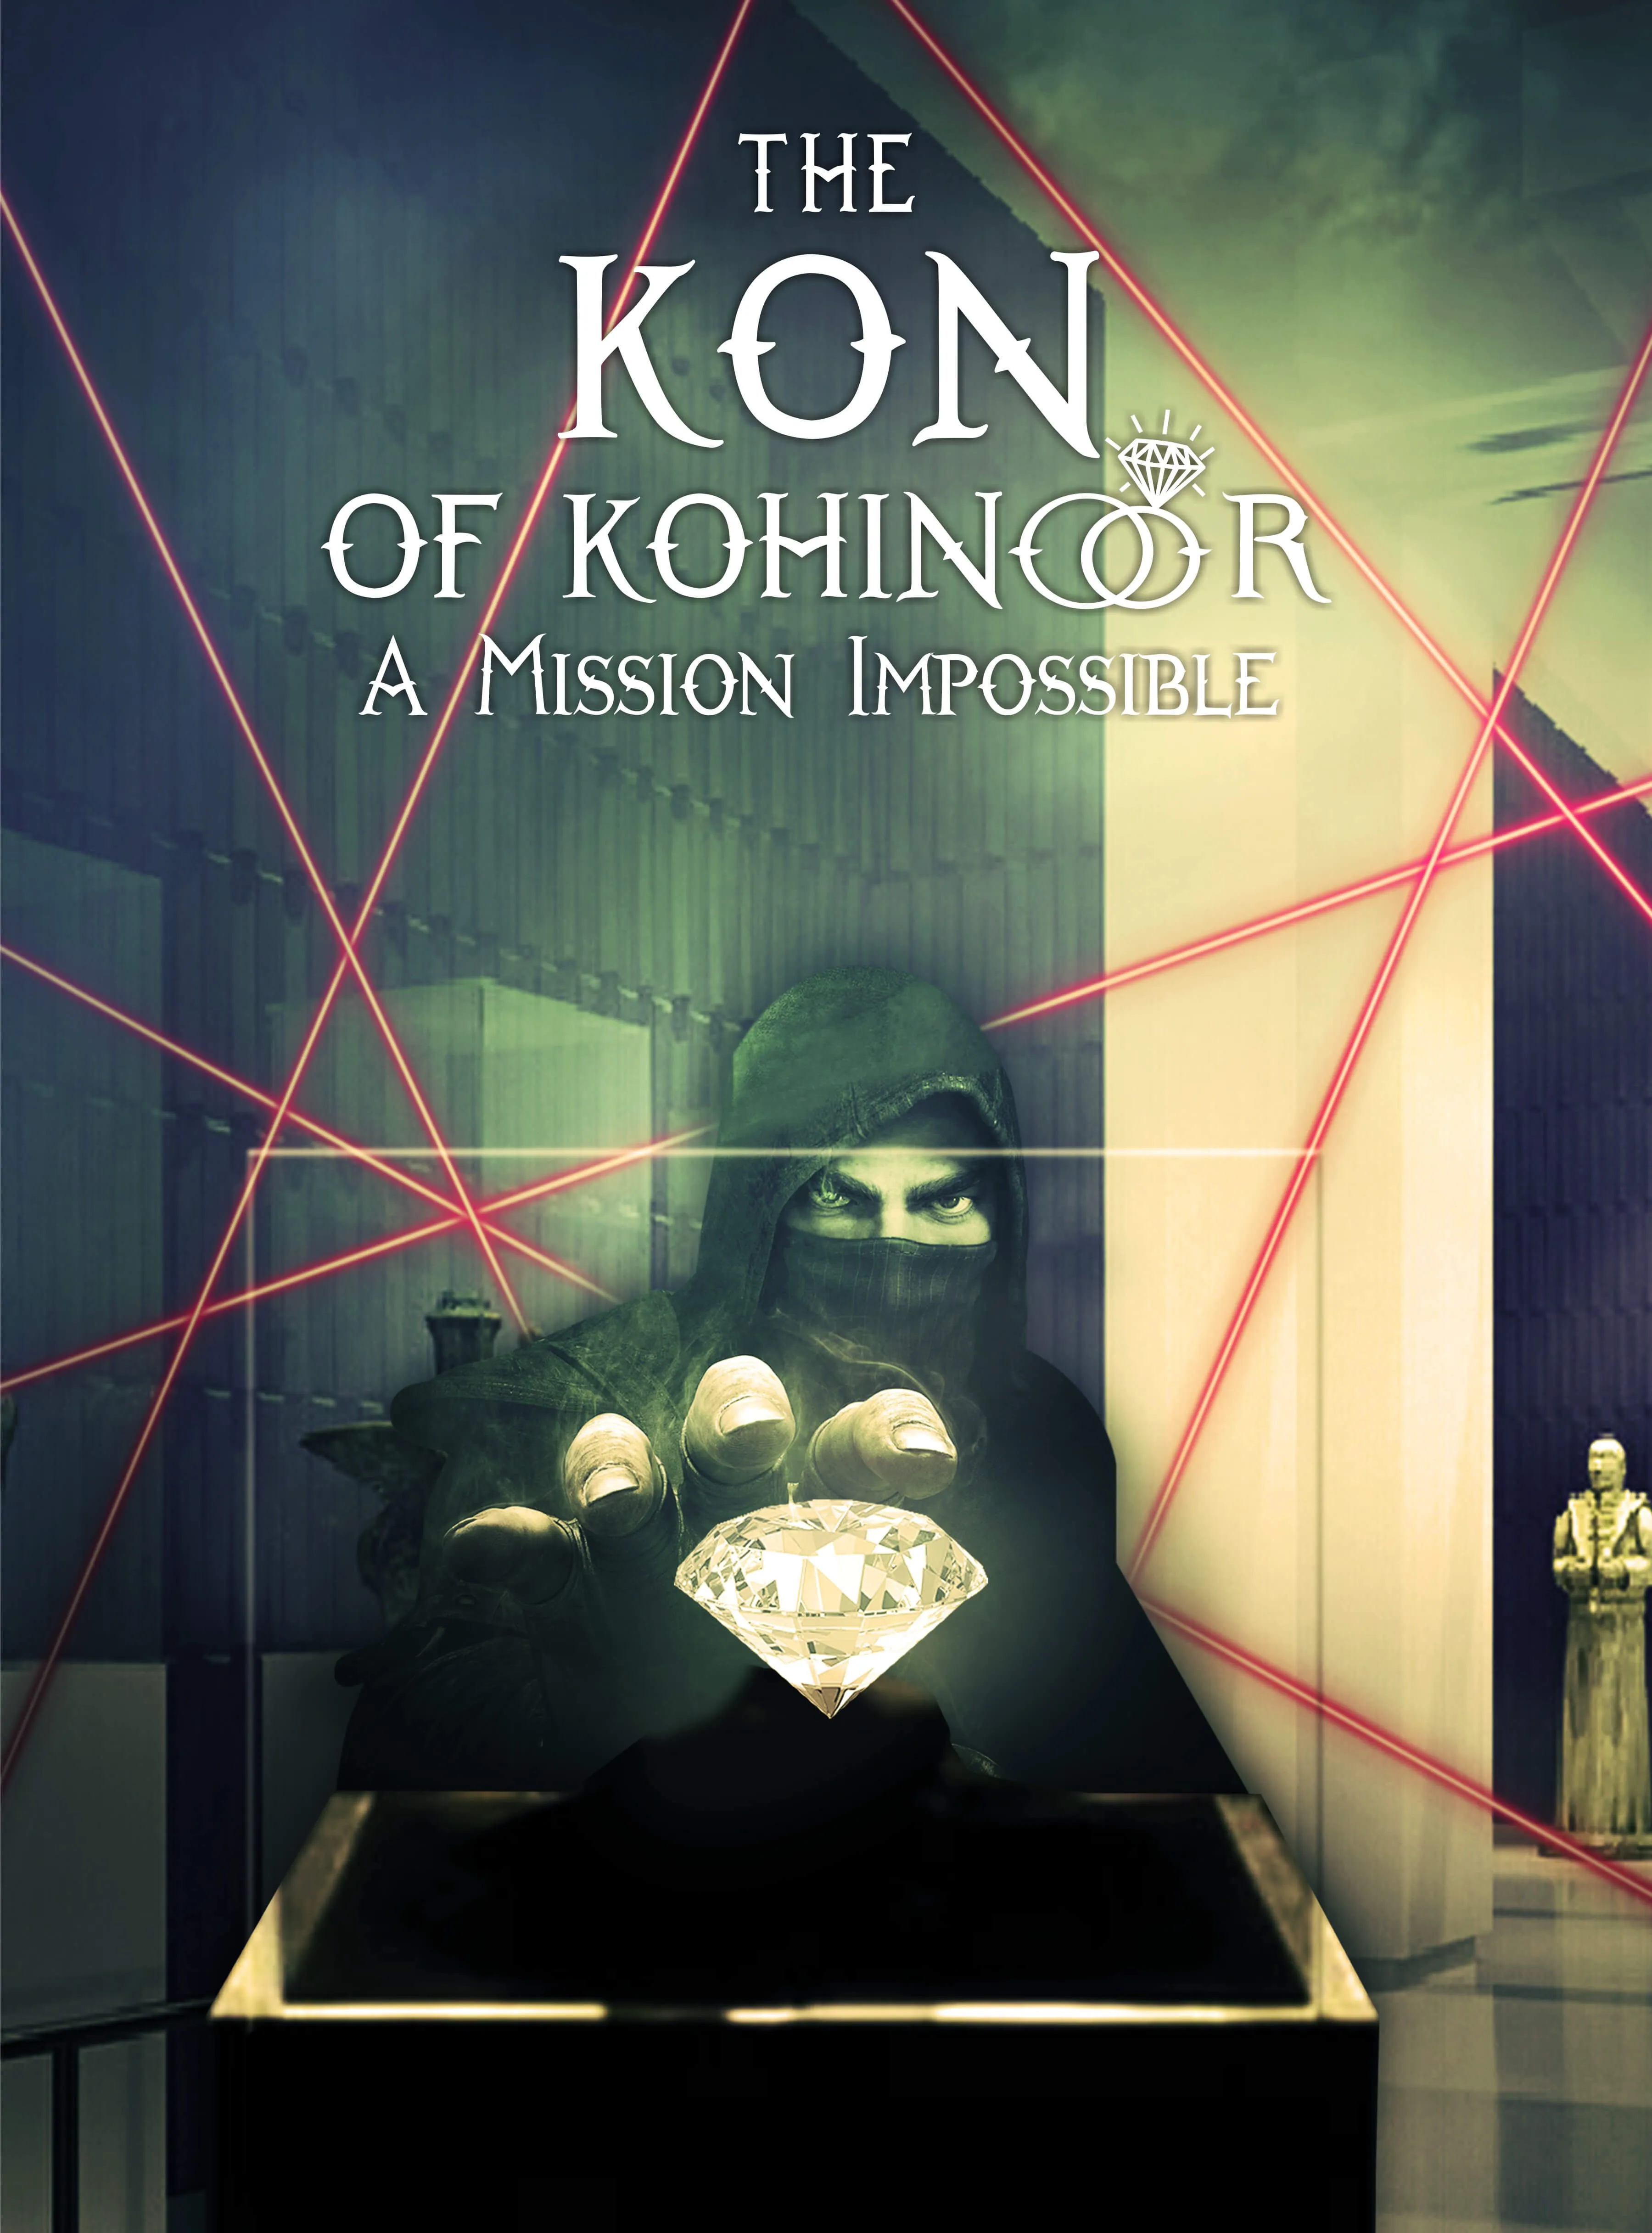 KON OF THE KOHINOOR